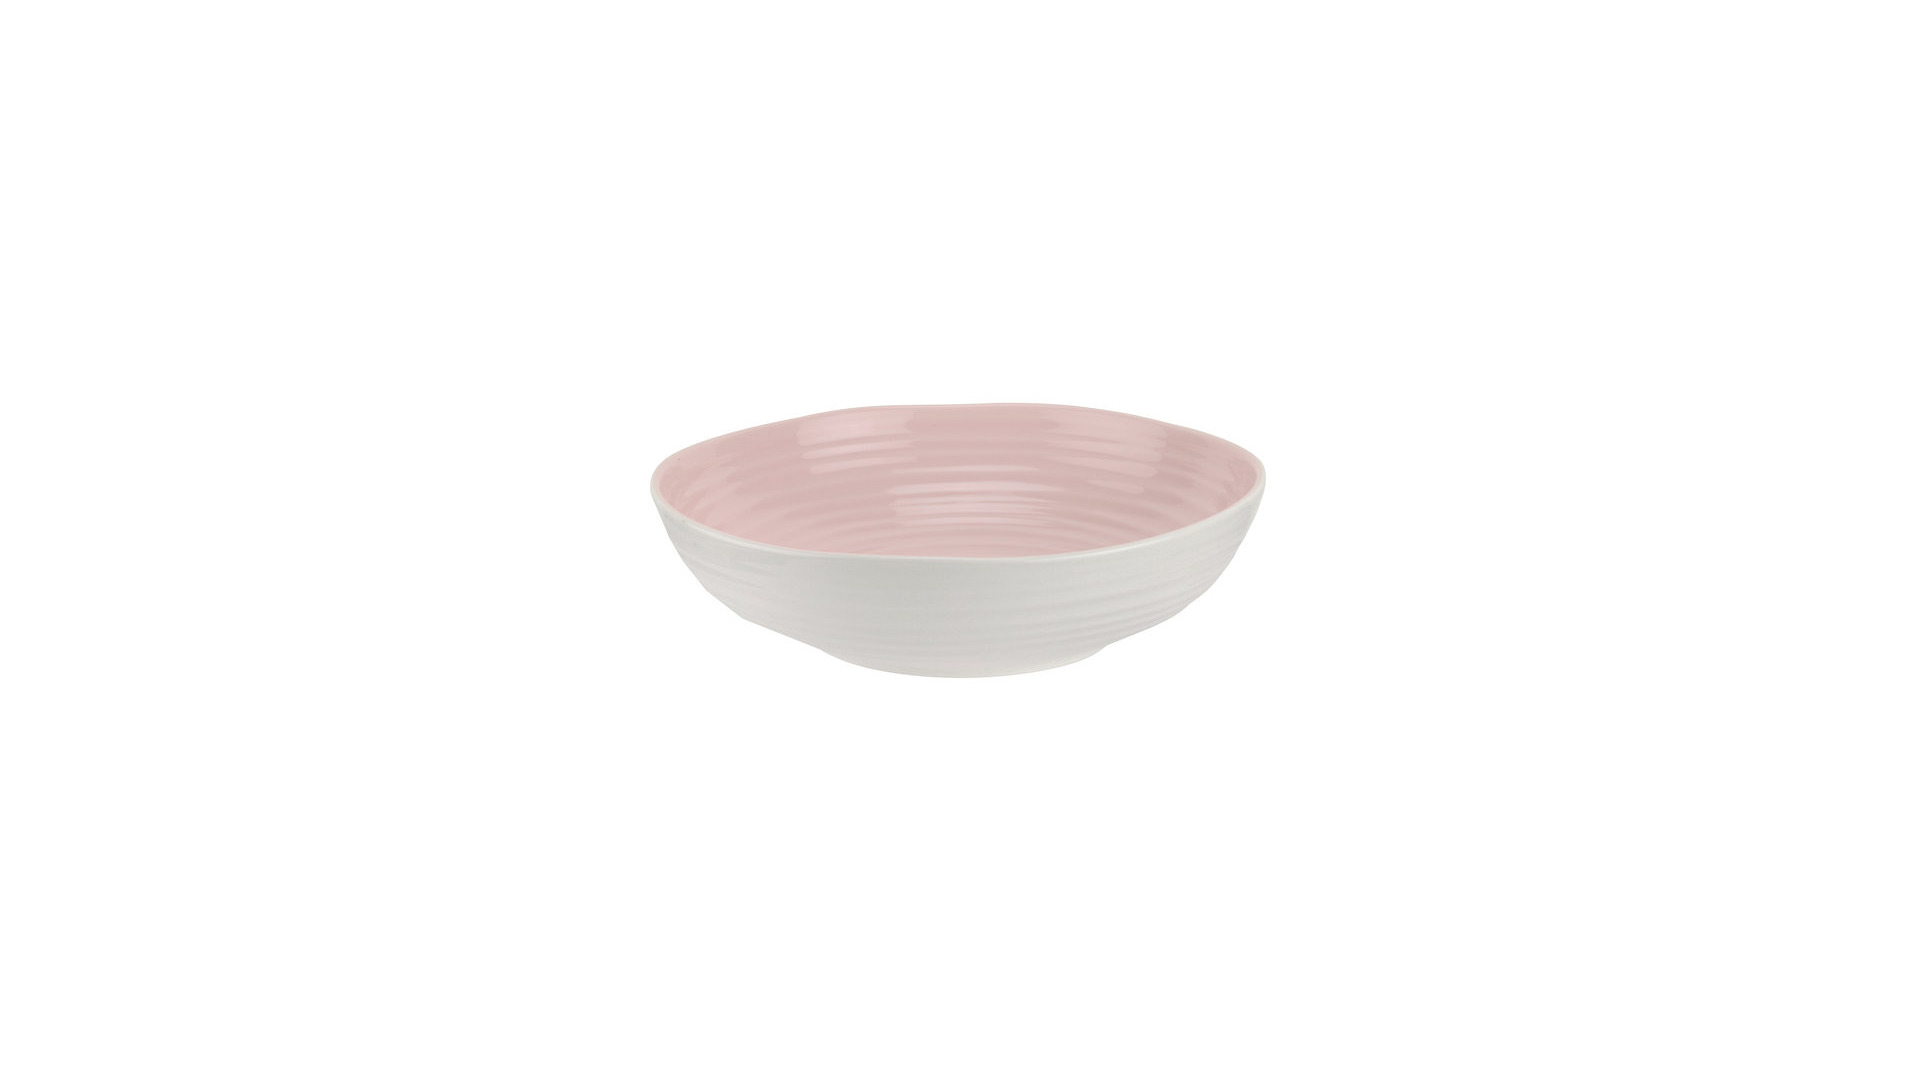 Тарелка для пасты Portmeirion Софи Конран для Портмейрион 23,5 см, розовая